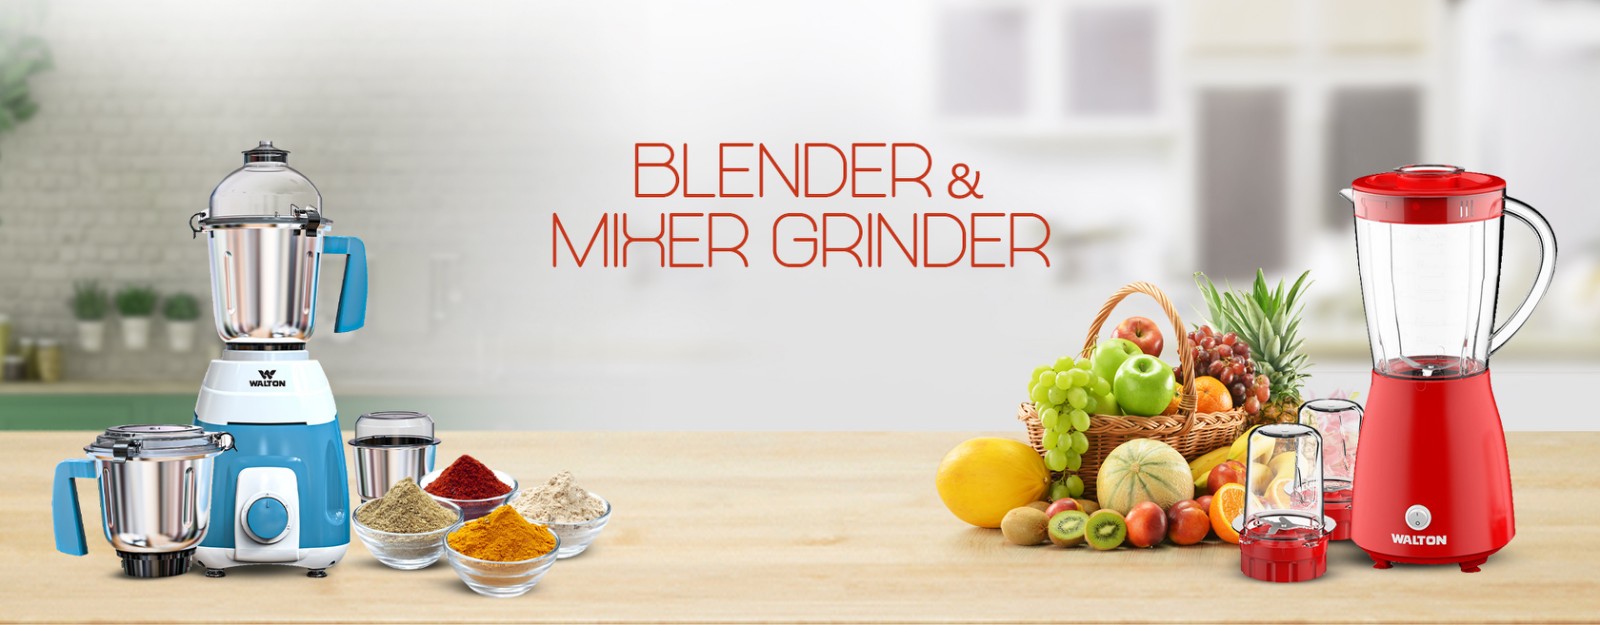 https://waltonbd.com/image/catalog/category-banner/blender-and-mixer-grinder/blendar-banner.jpg